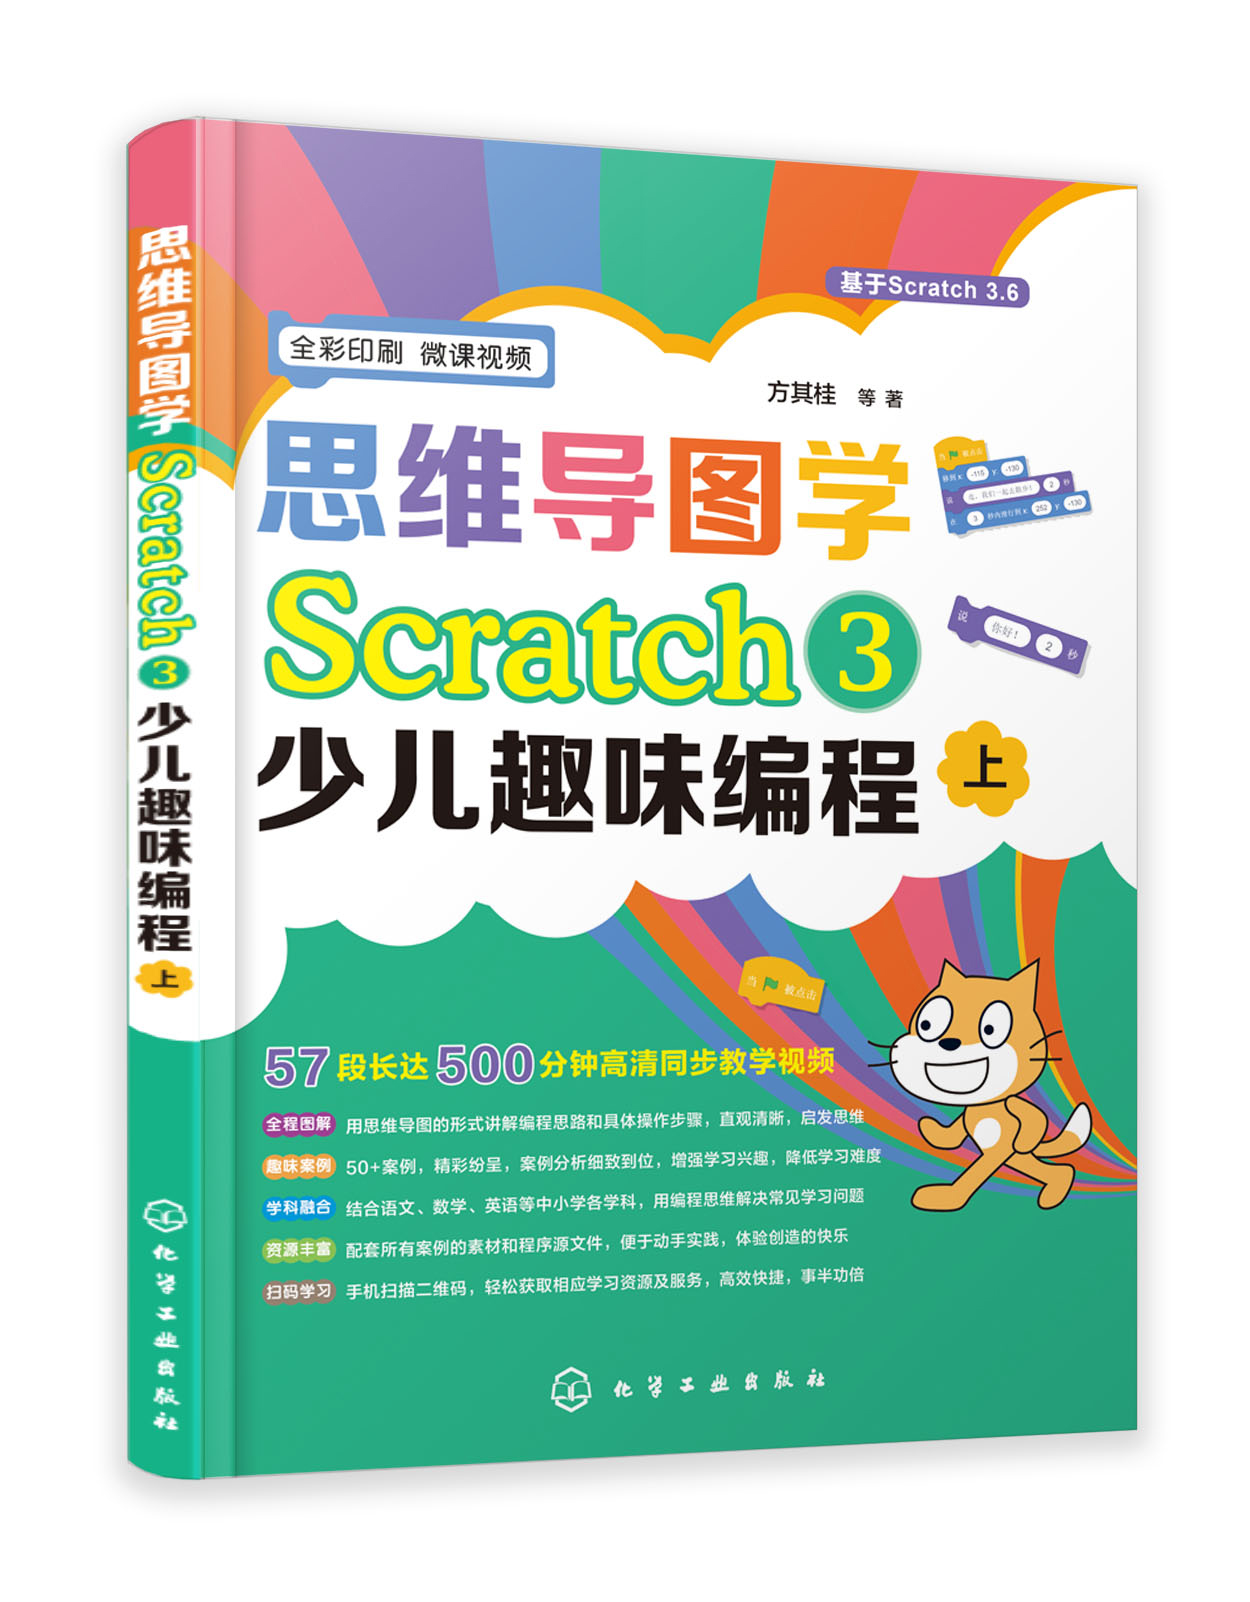 【书】思维导图学Scratch 3少儿趣味编程 全彩印刷 附案例素材程序源文件自学教程书 零基础学Scratch 图形化编程入门到精通